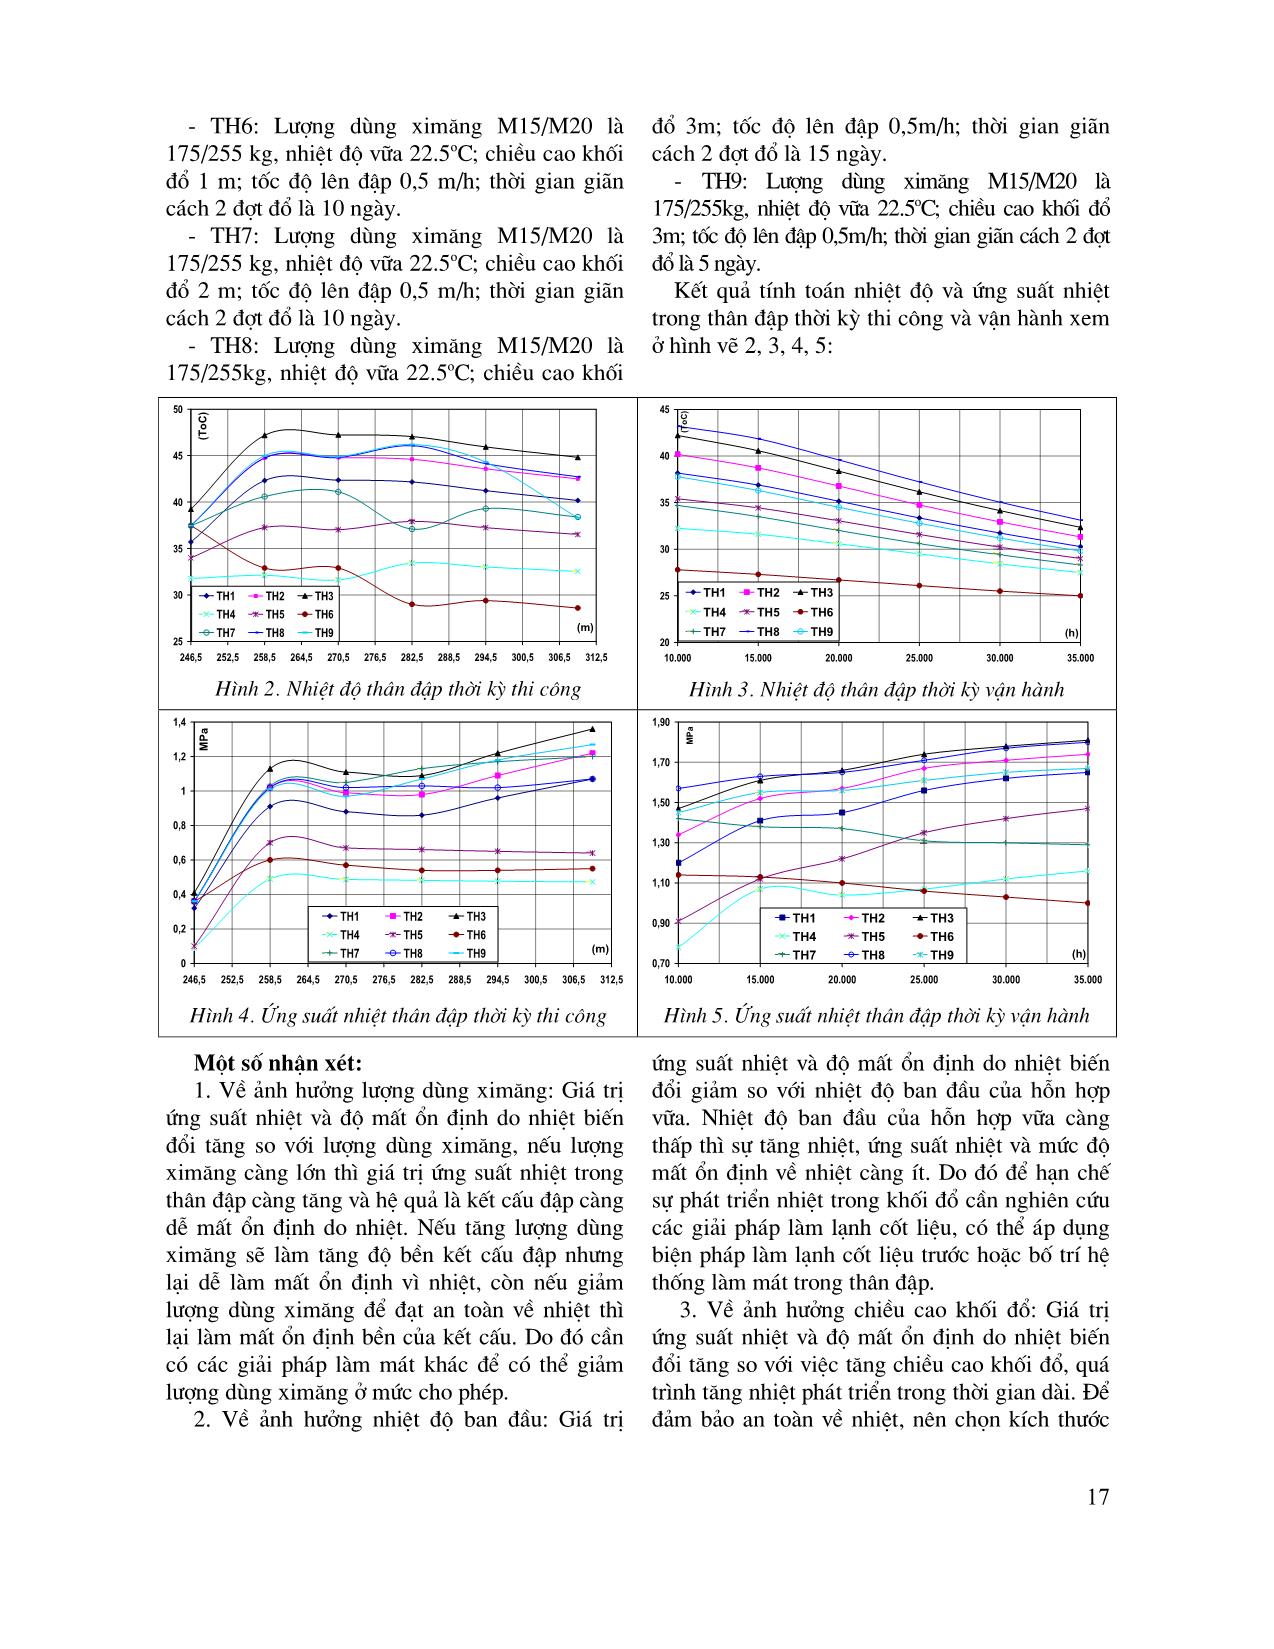 Nghiên cứu ảnh hưởng của một số yếu tố đến trạng thái ứng suất nhiệt trong đập Sê San 3 trang 4